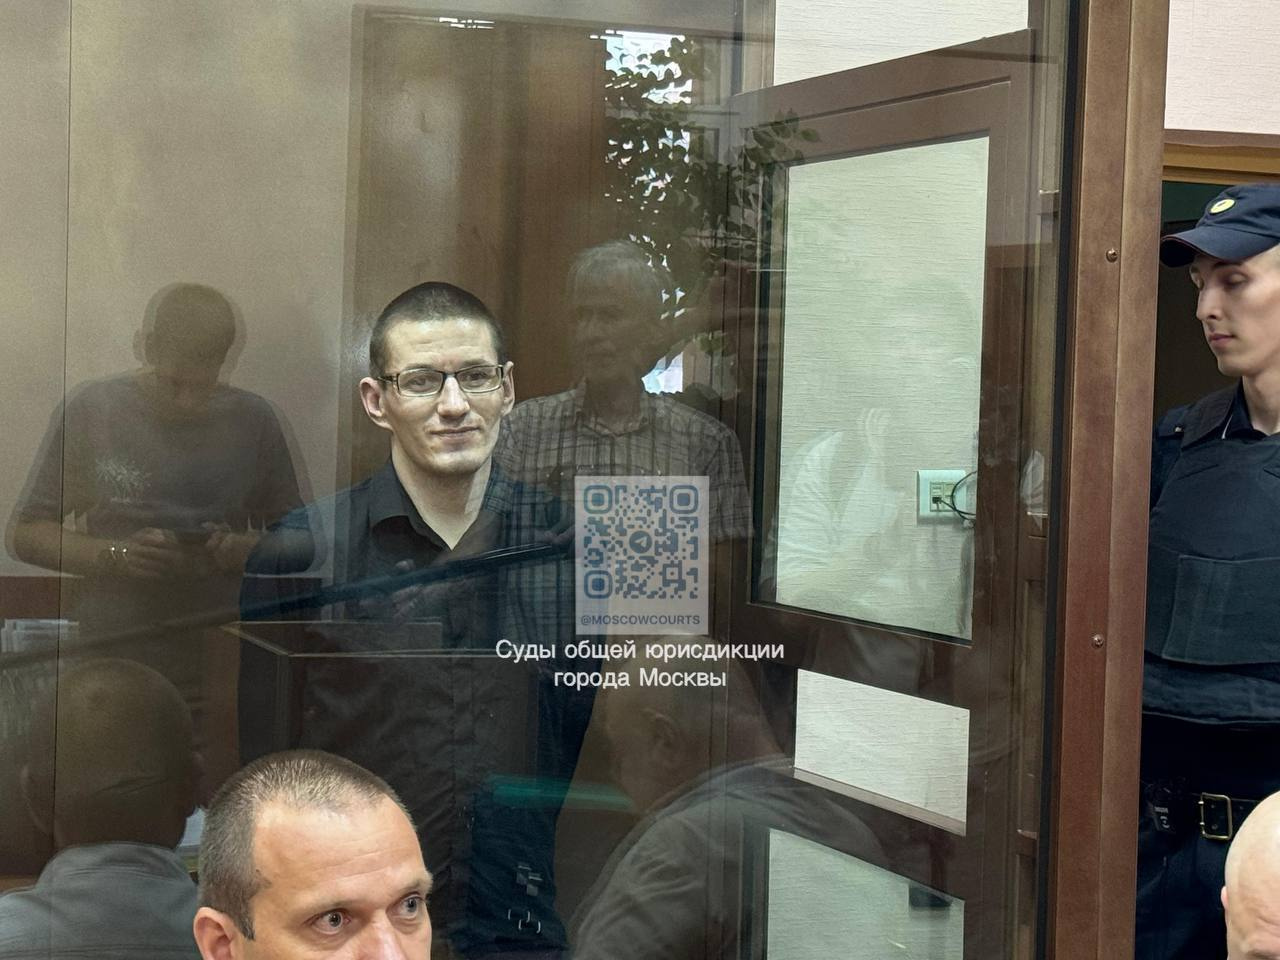 Суд в Москве приговорил гражданина США Роберта Вудлэнда к 12 с половиной годам по обвинению в сбыте наркотиков